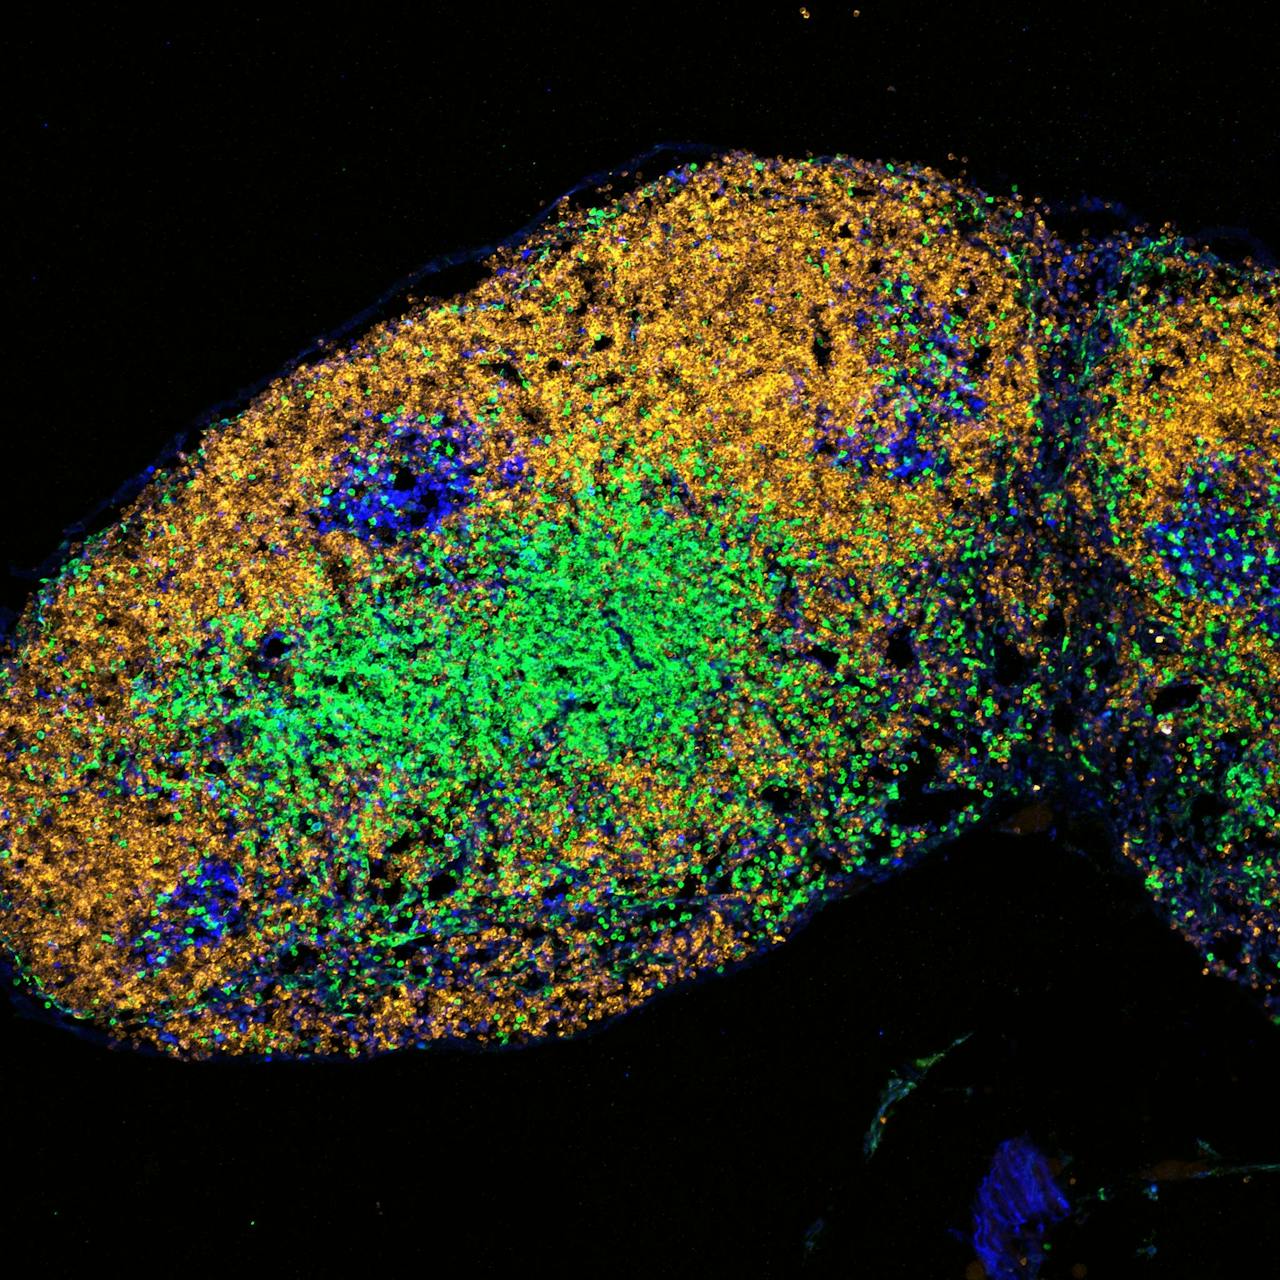 Immuunreactie in cellen van een jonge muis